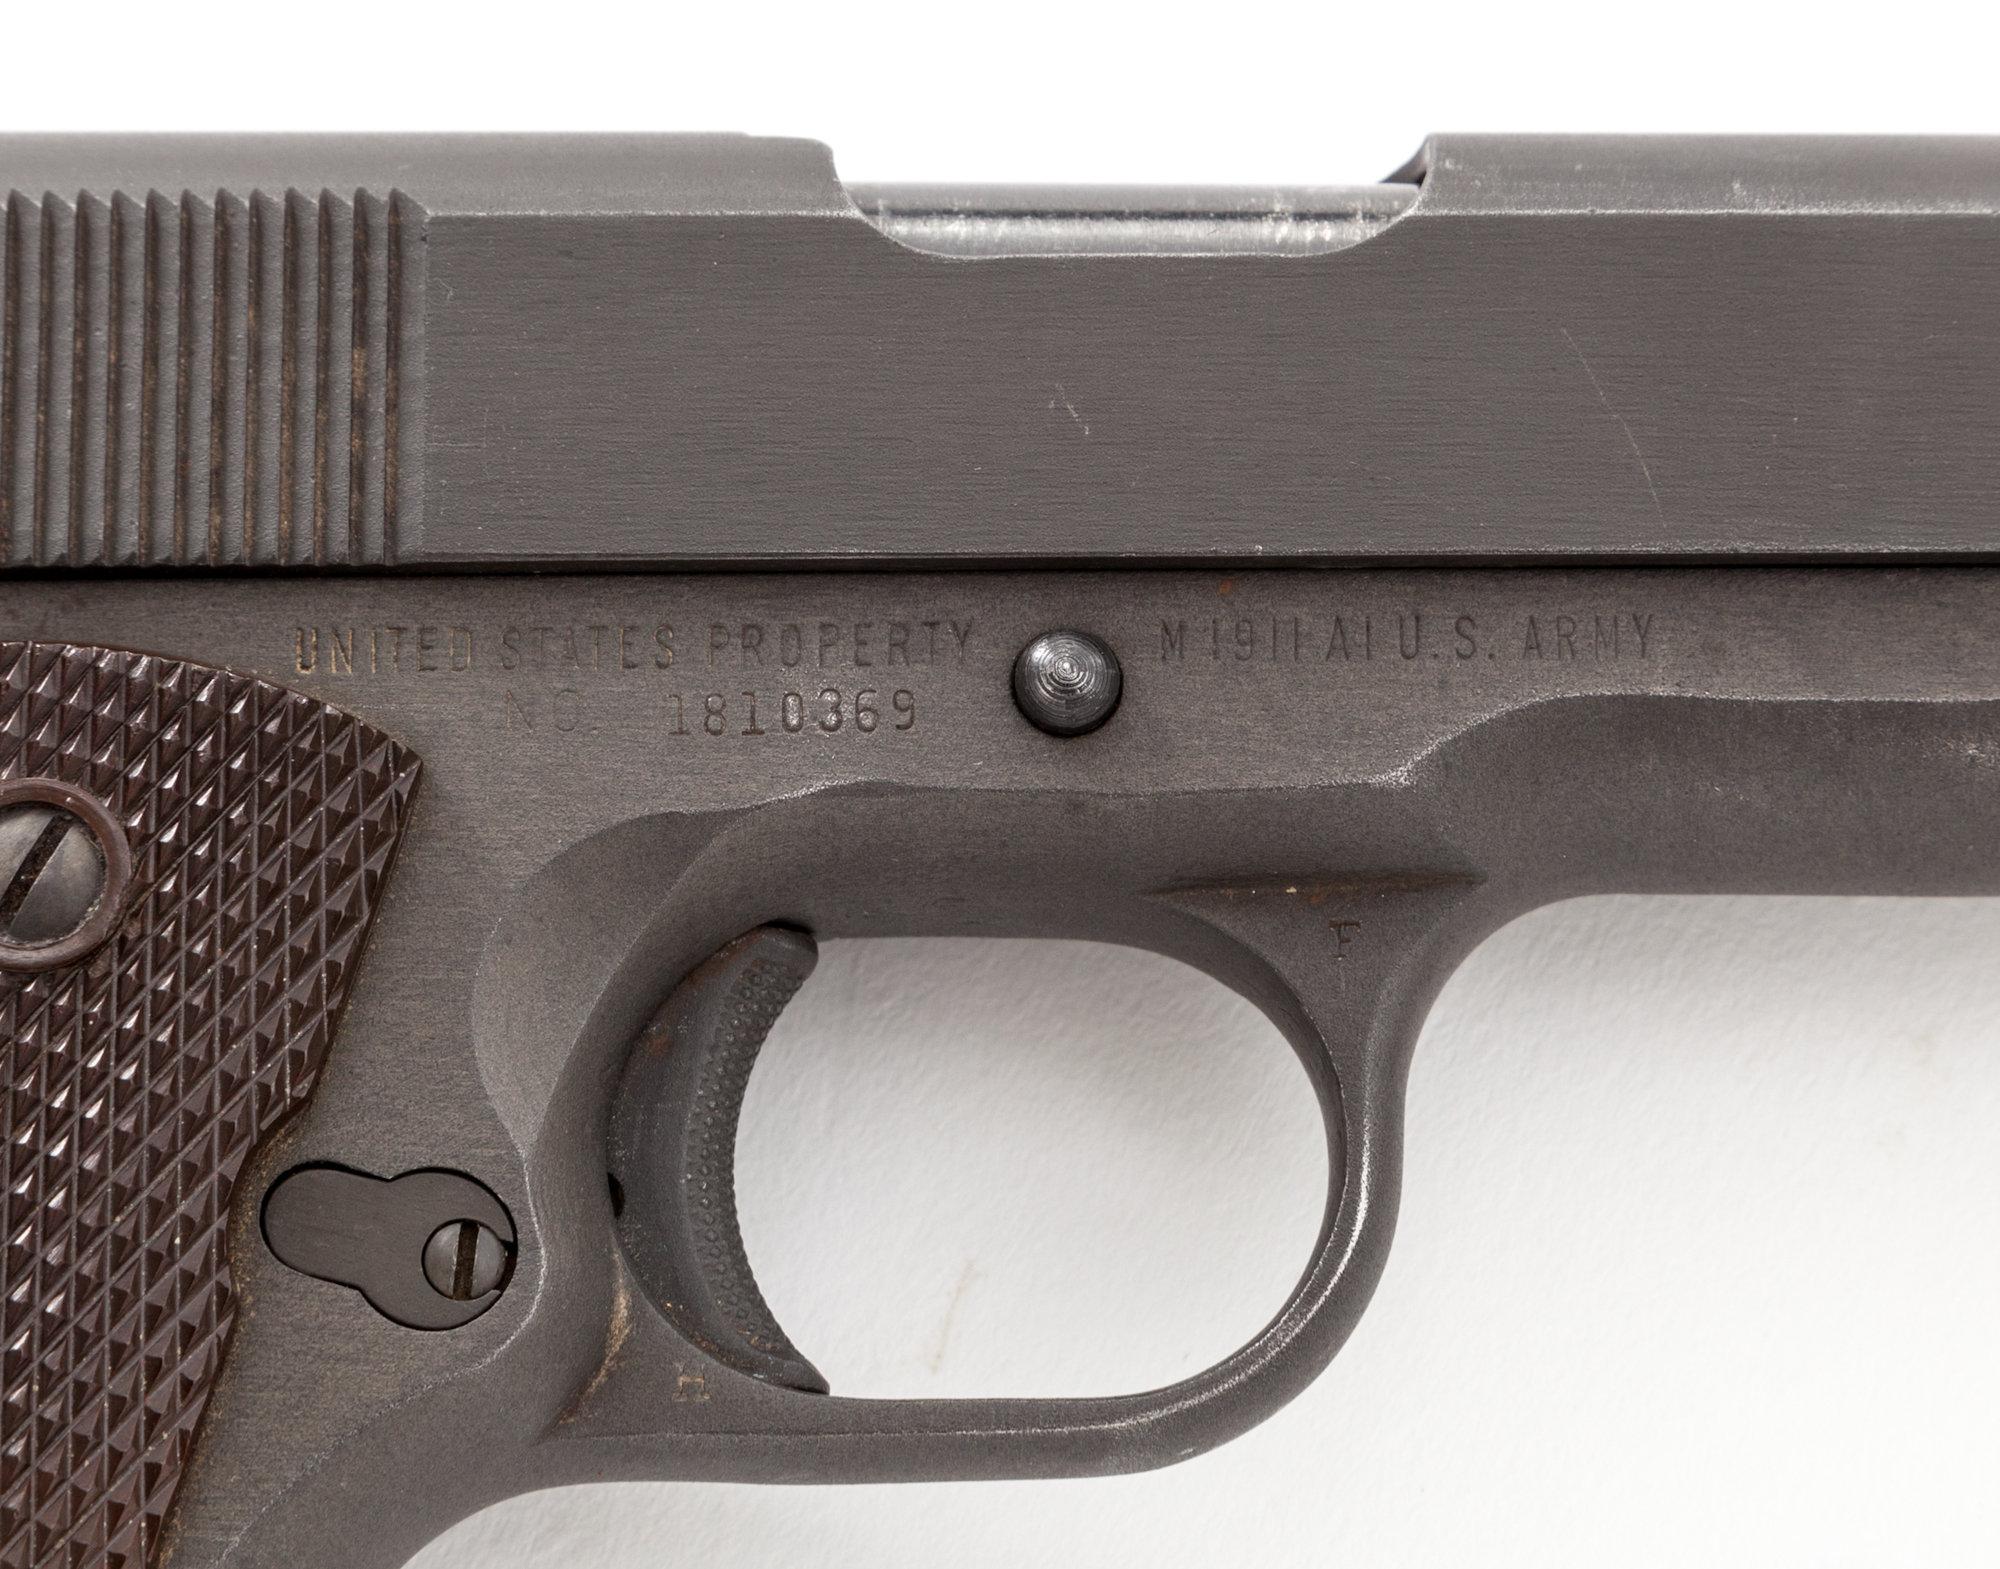 Remington-Rand 1911-A1 Semi-Auto Pistol